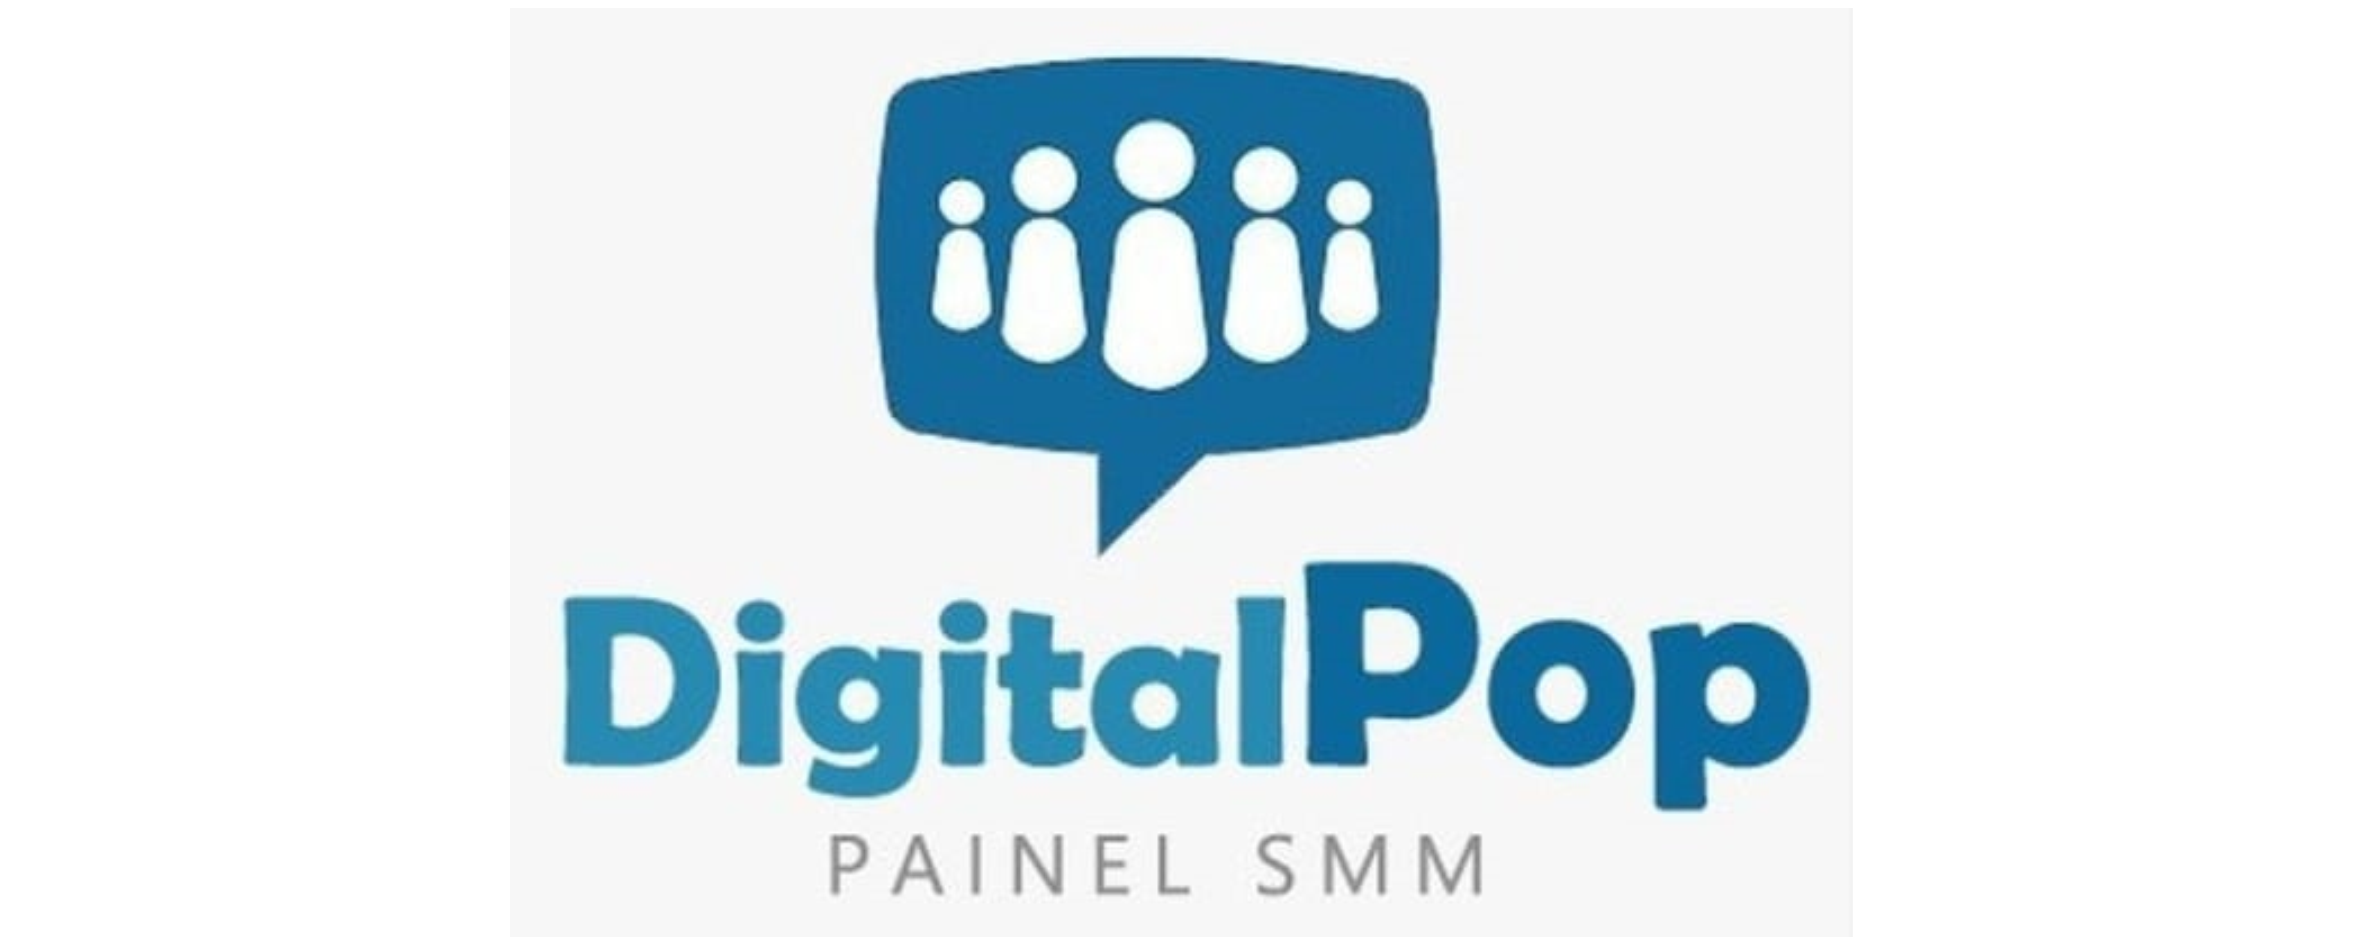 Painel Digital Pop